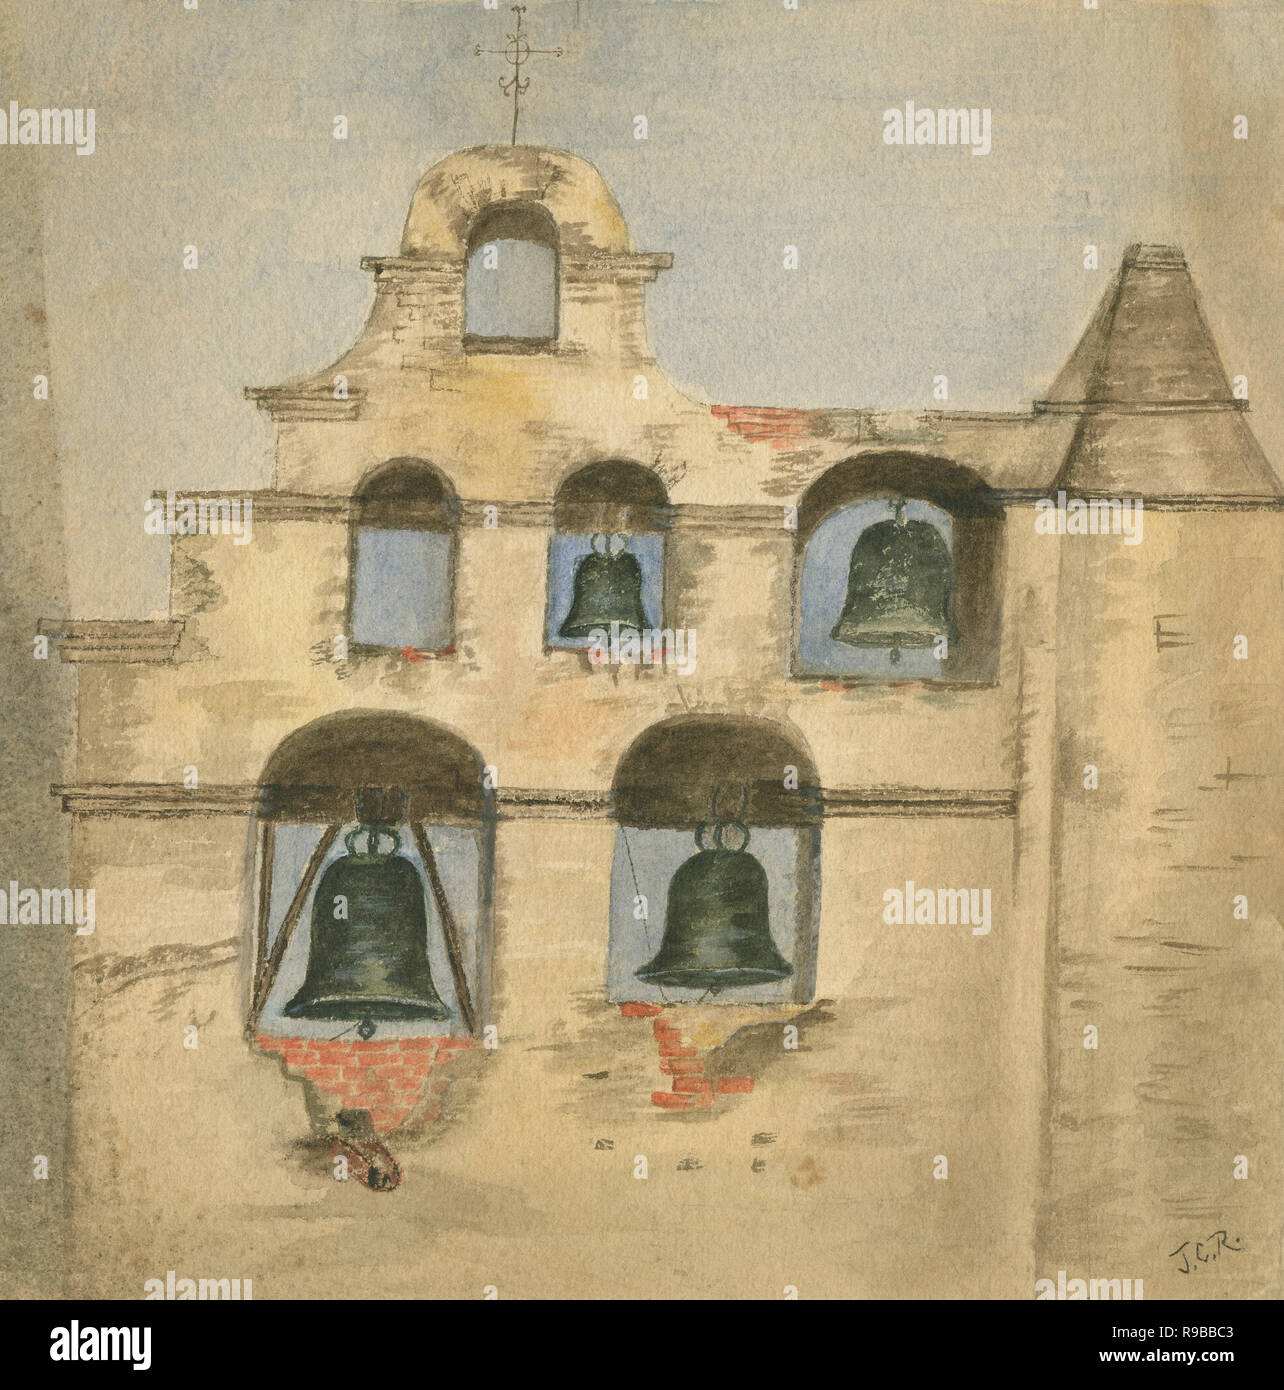 Antike c 1890 Aquarell Malerei, die Glocke Wand an der Mission San Gabriel Arcangel. Mission San Gabriel Arcángel ist eine römisch-katholische Mission und ein historisches Wahrzeichen in San Gabriel, Kalifornien. Die Siedlung wurde durch die Spanier der Franziskaner im Jahre 1771 gegründet. Quelle: ORIGINAL GEMÄLDE Stockfoto